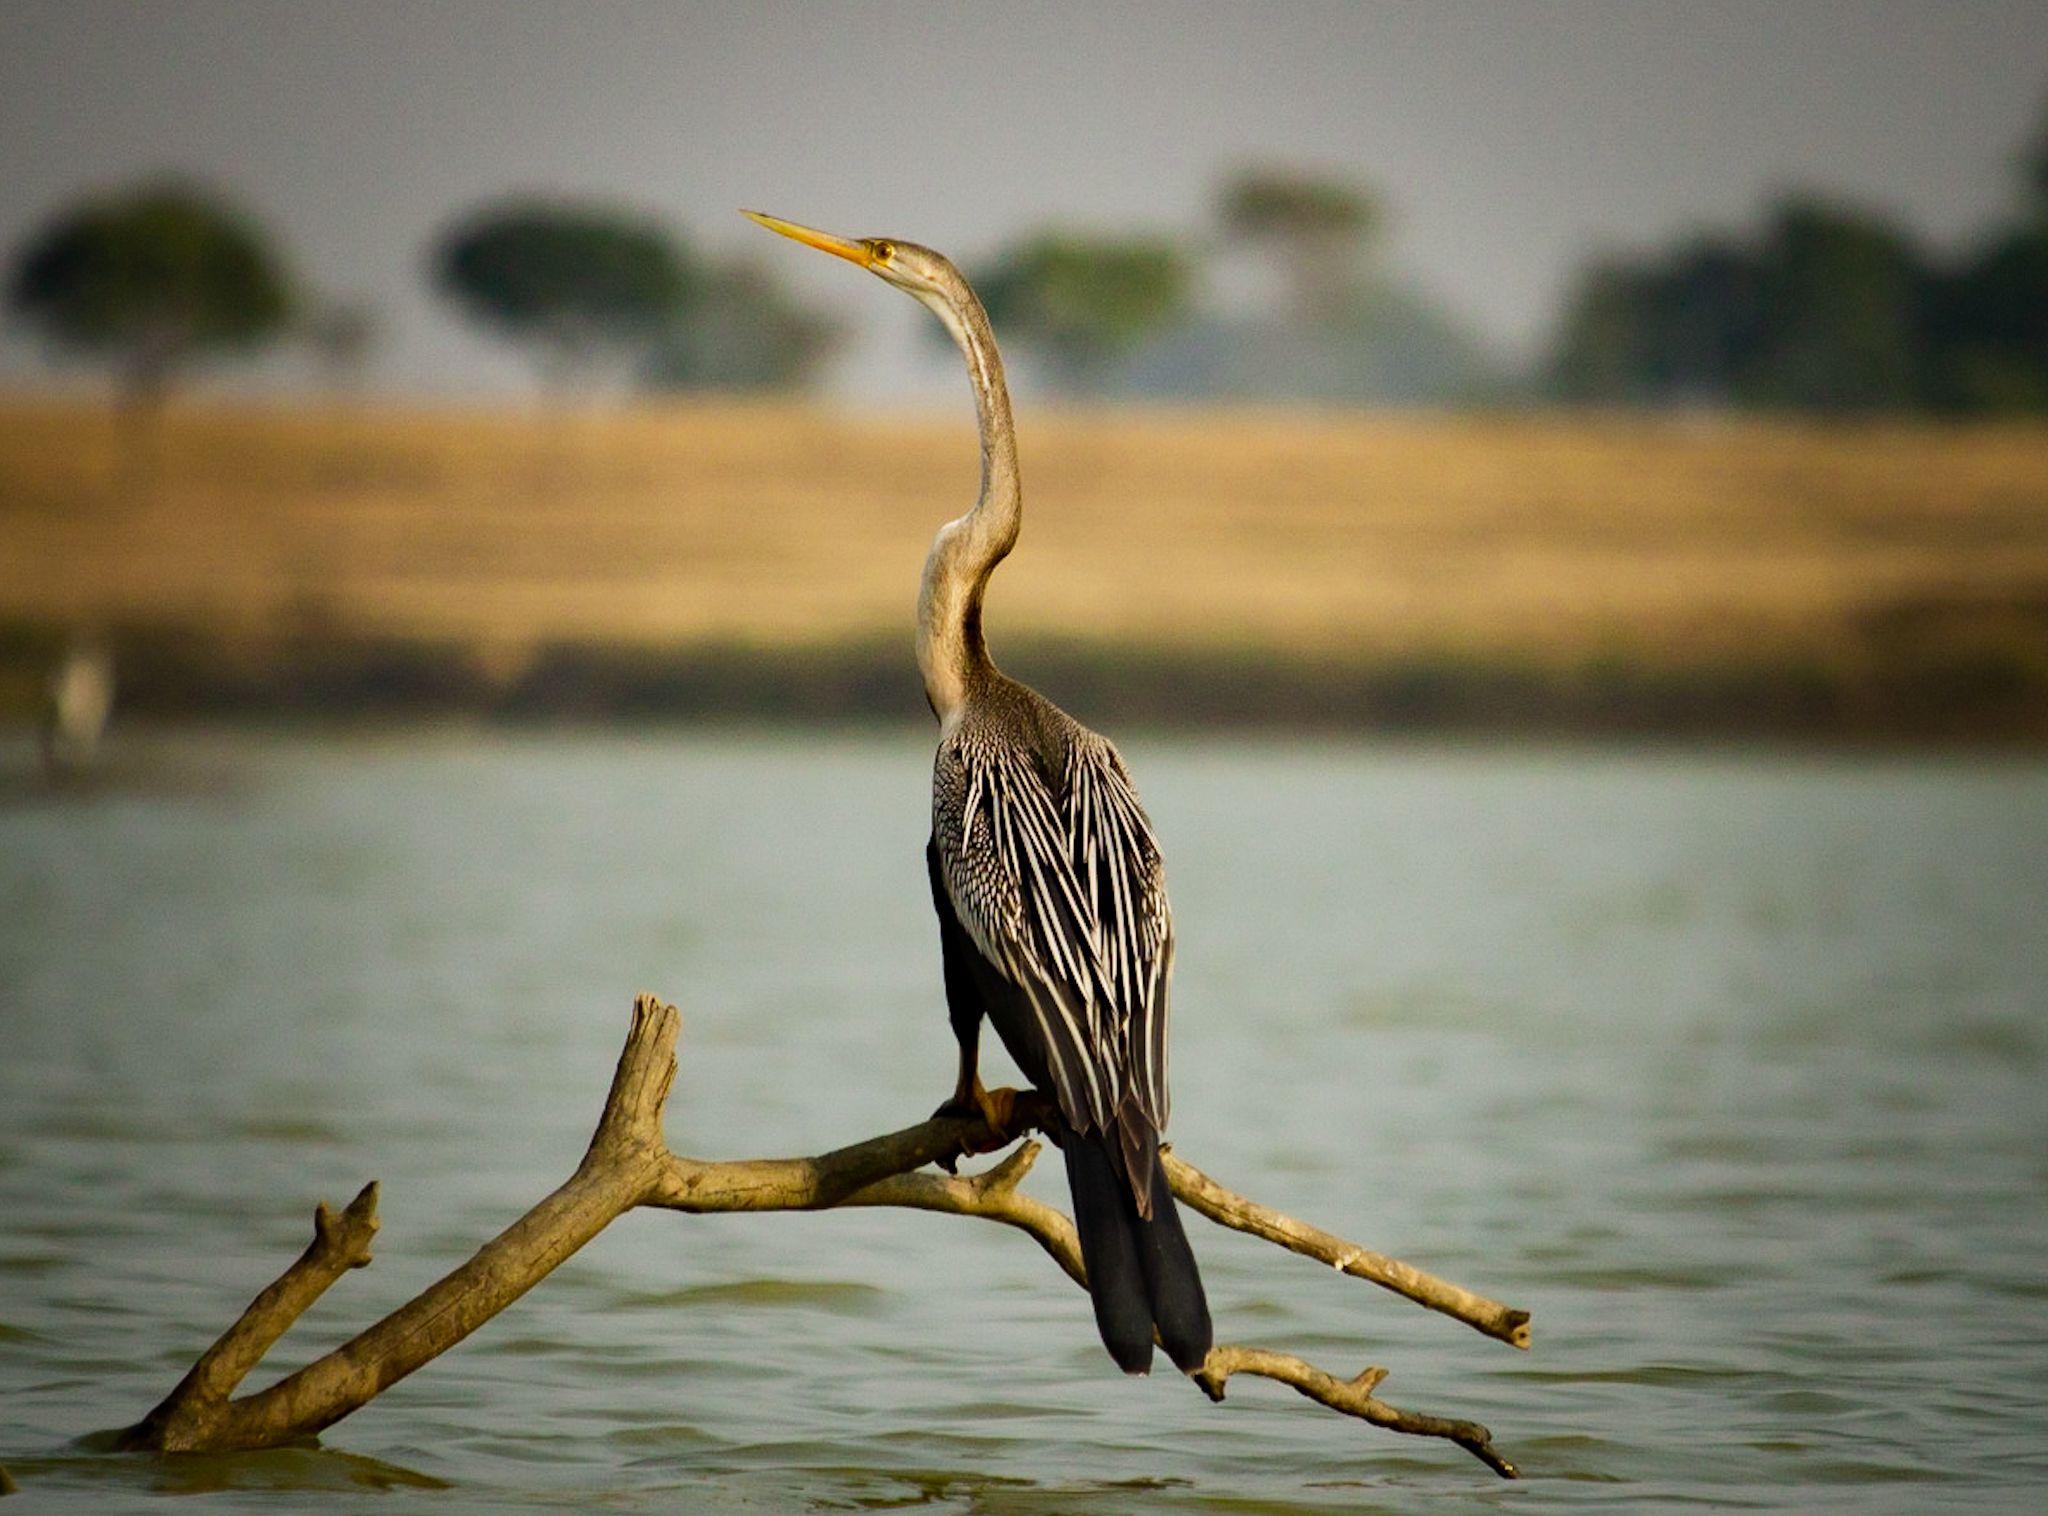 #waterbird, #bird, #birdphotography, #natgeo, Shadab Ishtiyak